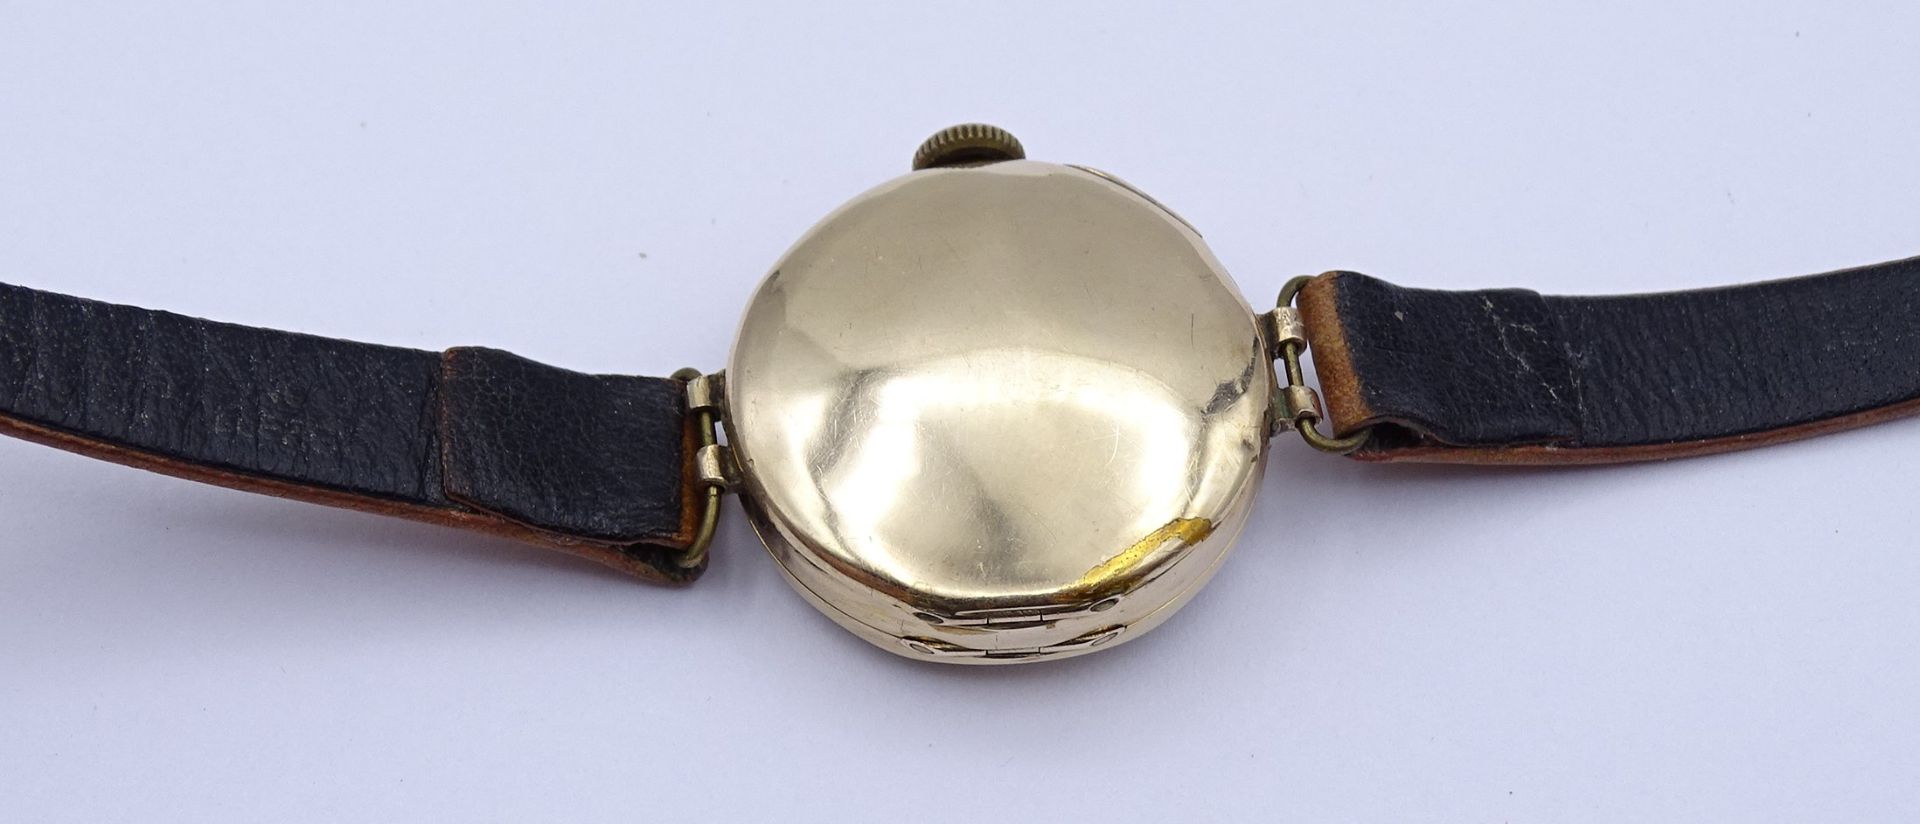 Armbanduhr "Rolex" Mod. Rolco, GG Gehäuse 375/000, mechanisch, Werk läuft für einige Minuten, D. 25 - Bild 3 aus 14